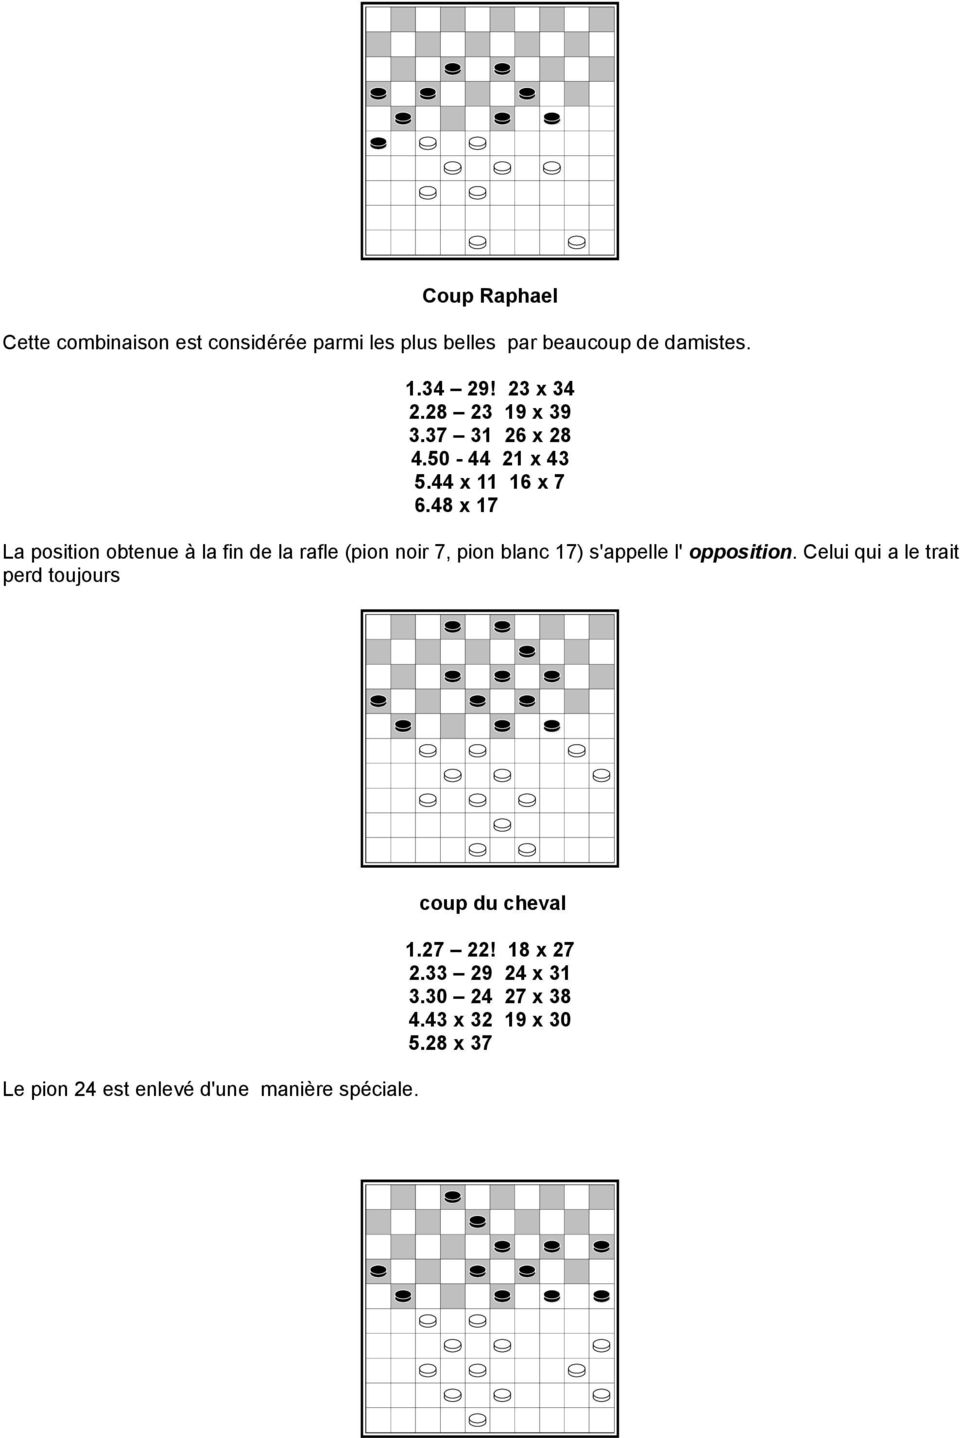 48 x 17 La position obtenue à la fin de la rafle (pion noir 7, pion blanc 17) s'appelle l' opposition.